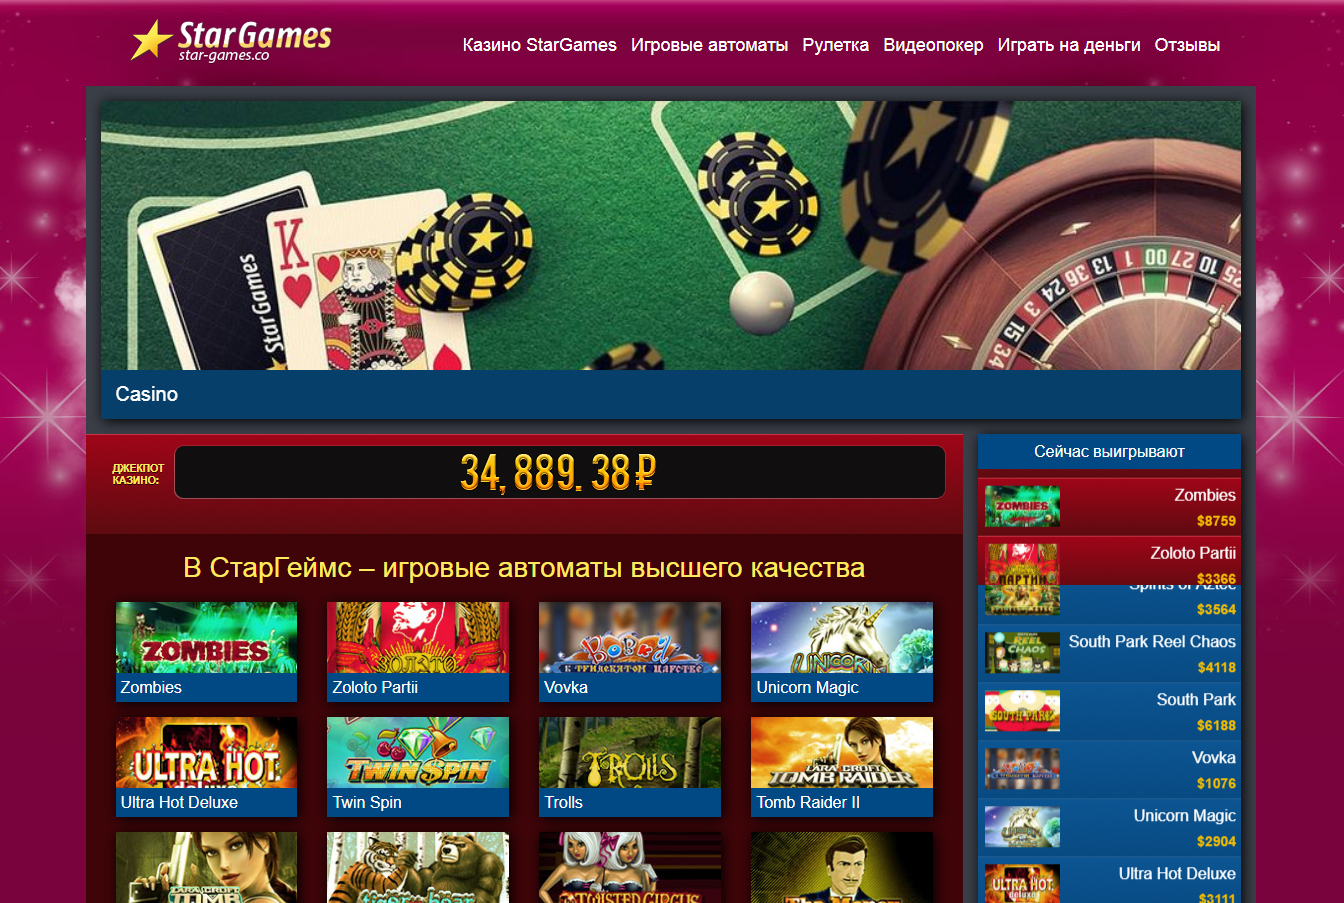 Платформа для онлайн-казино - купить движок интернет казино от Slotegrator